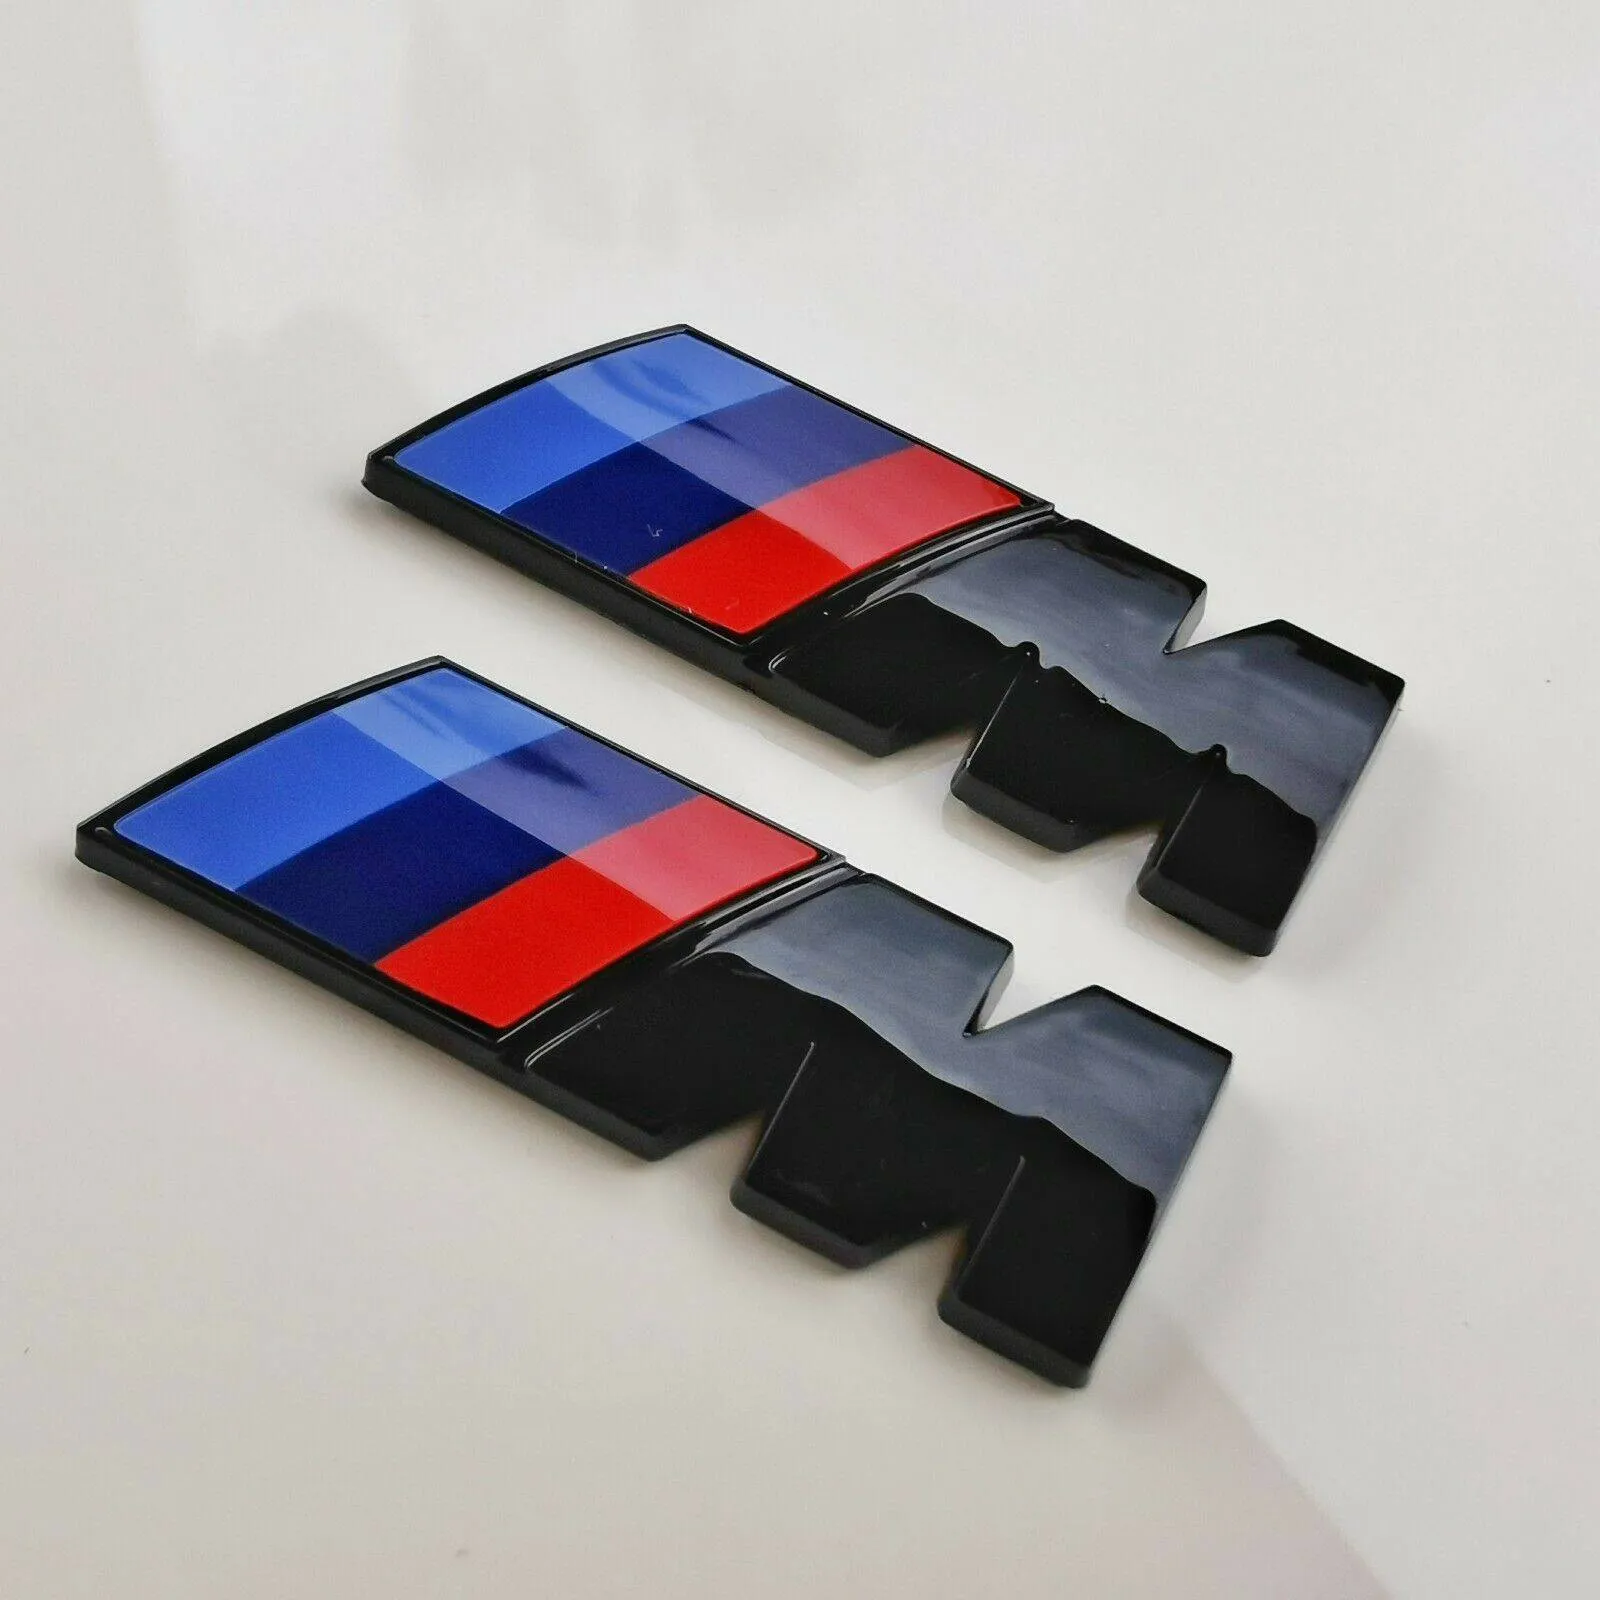 BMW M logo emblem i svart till skärmar och baklucka 